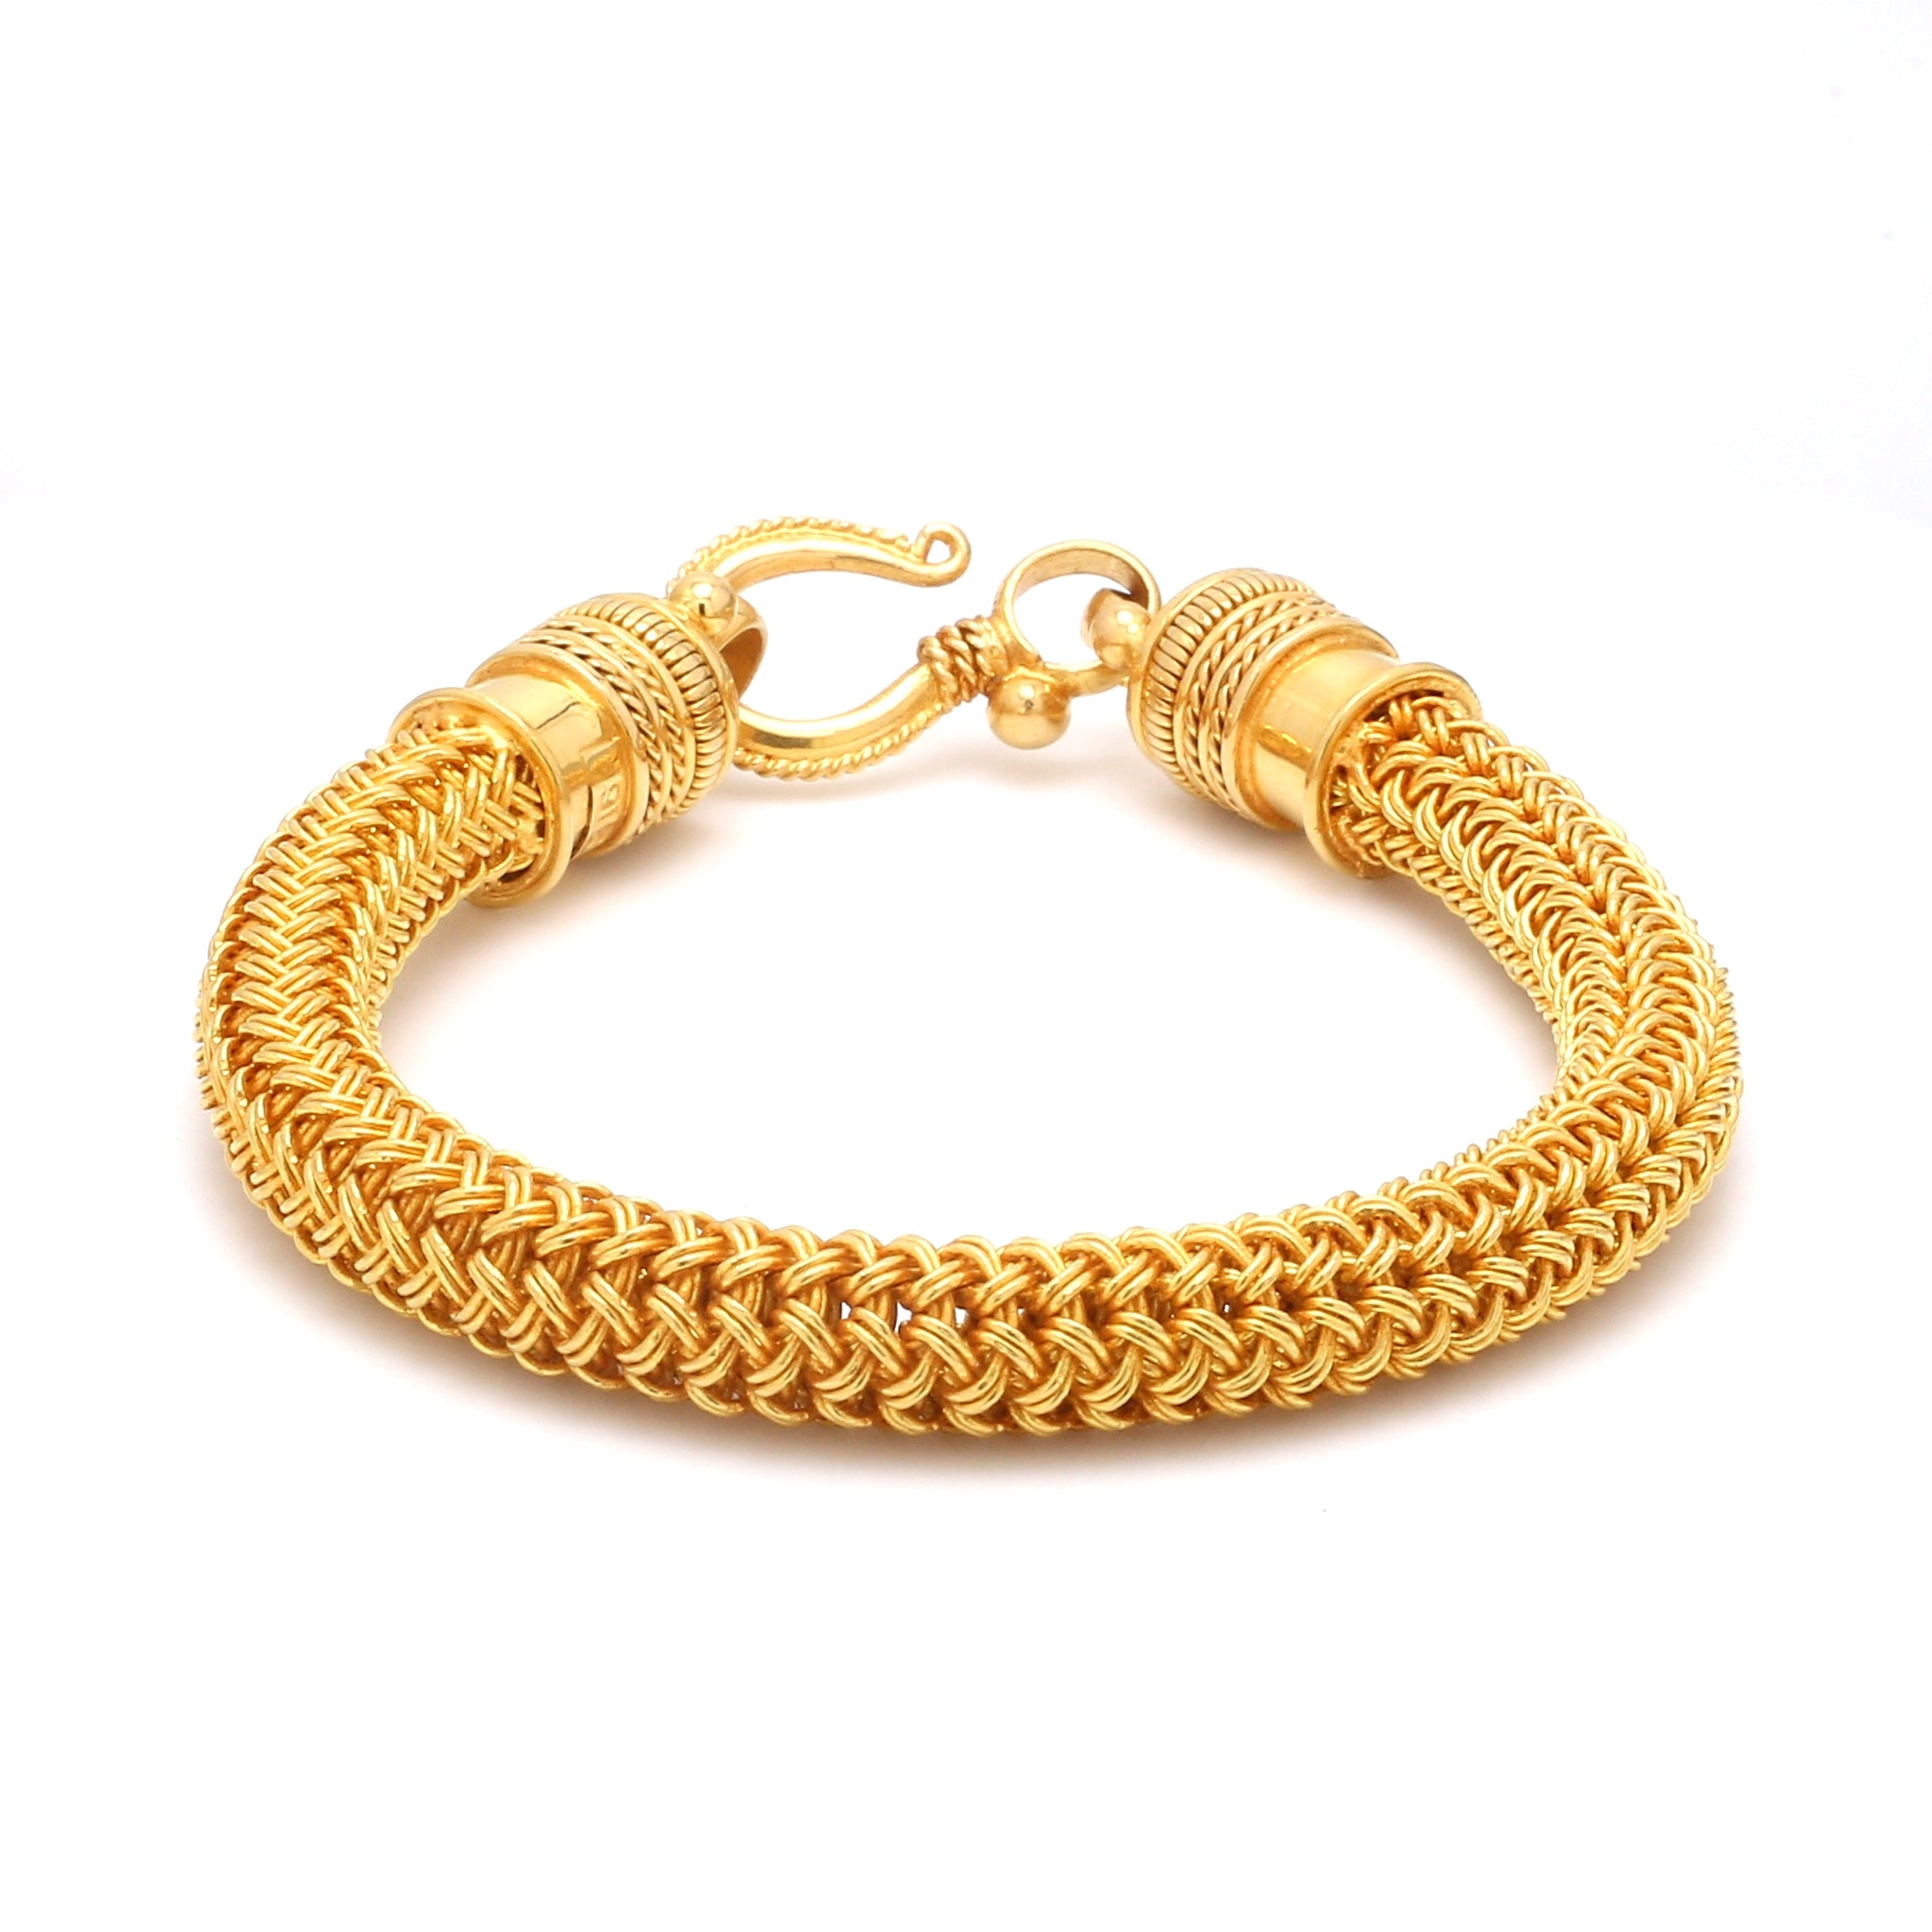 Gold Bracelet Designs for Men 2022 | Gold Bracelet designs in 22k |  Lightweight Gold Bracelet Design - YouTube